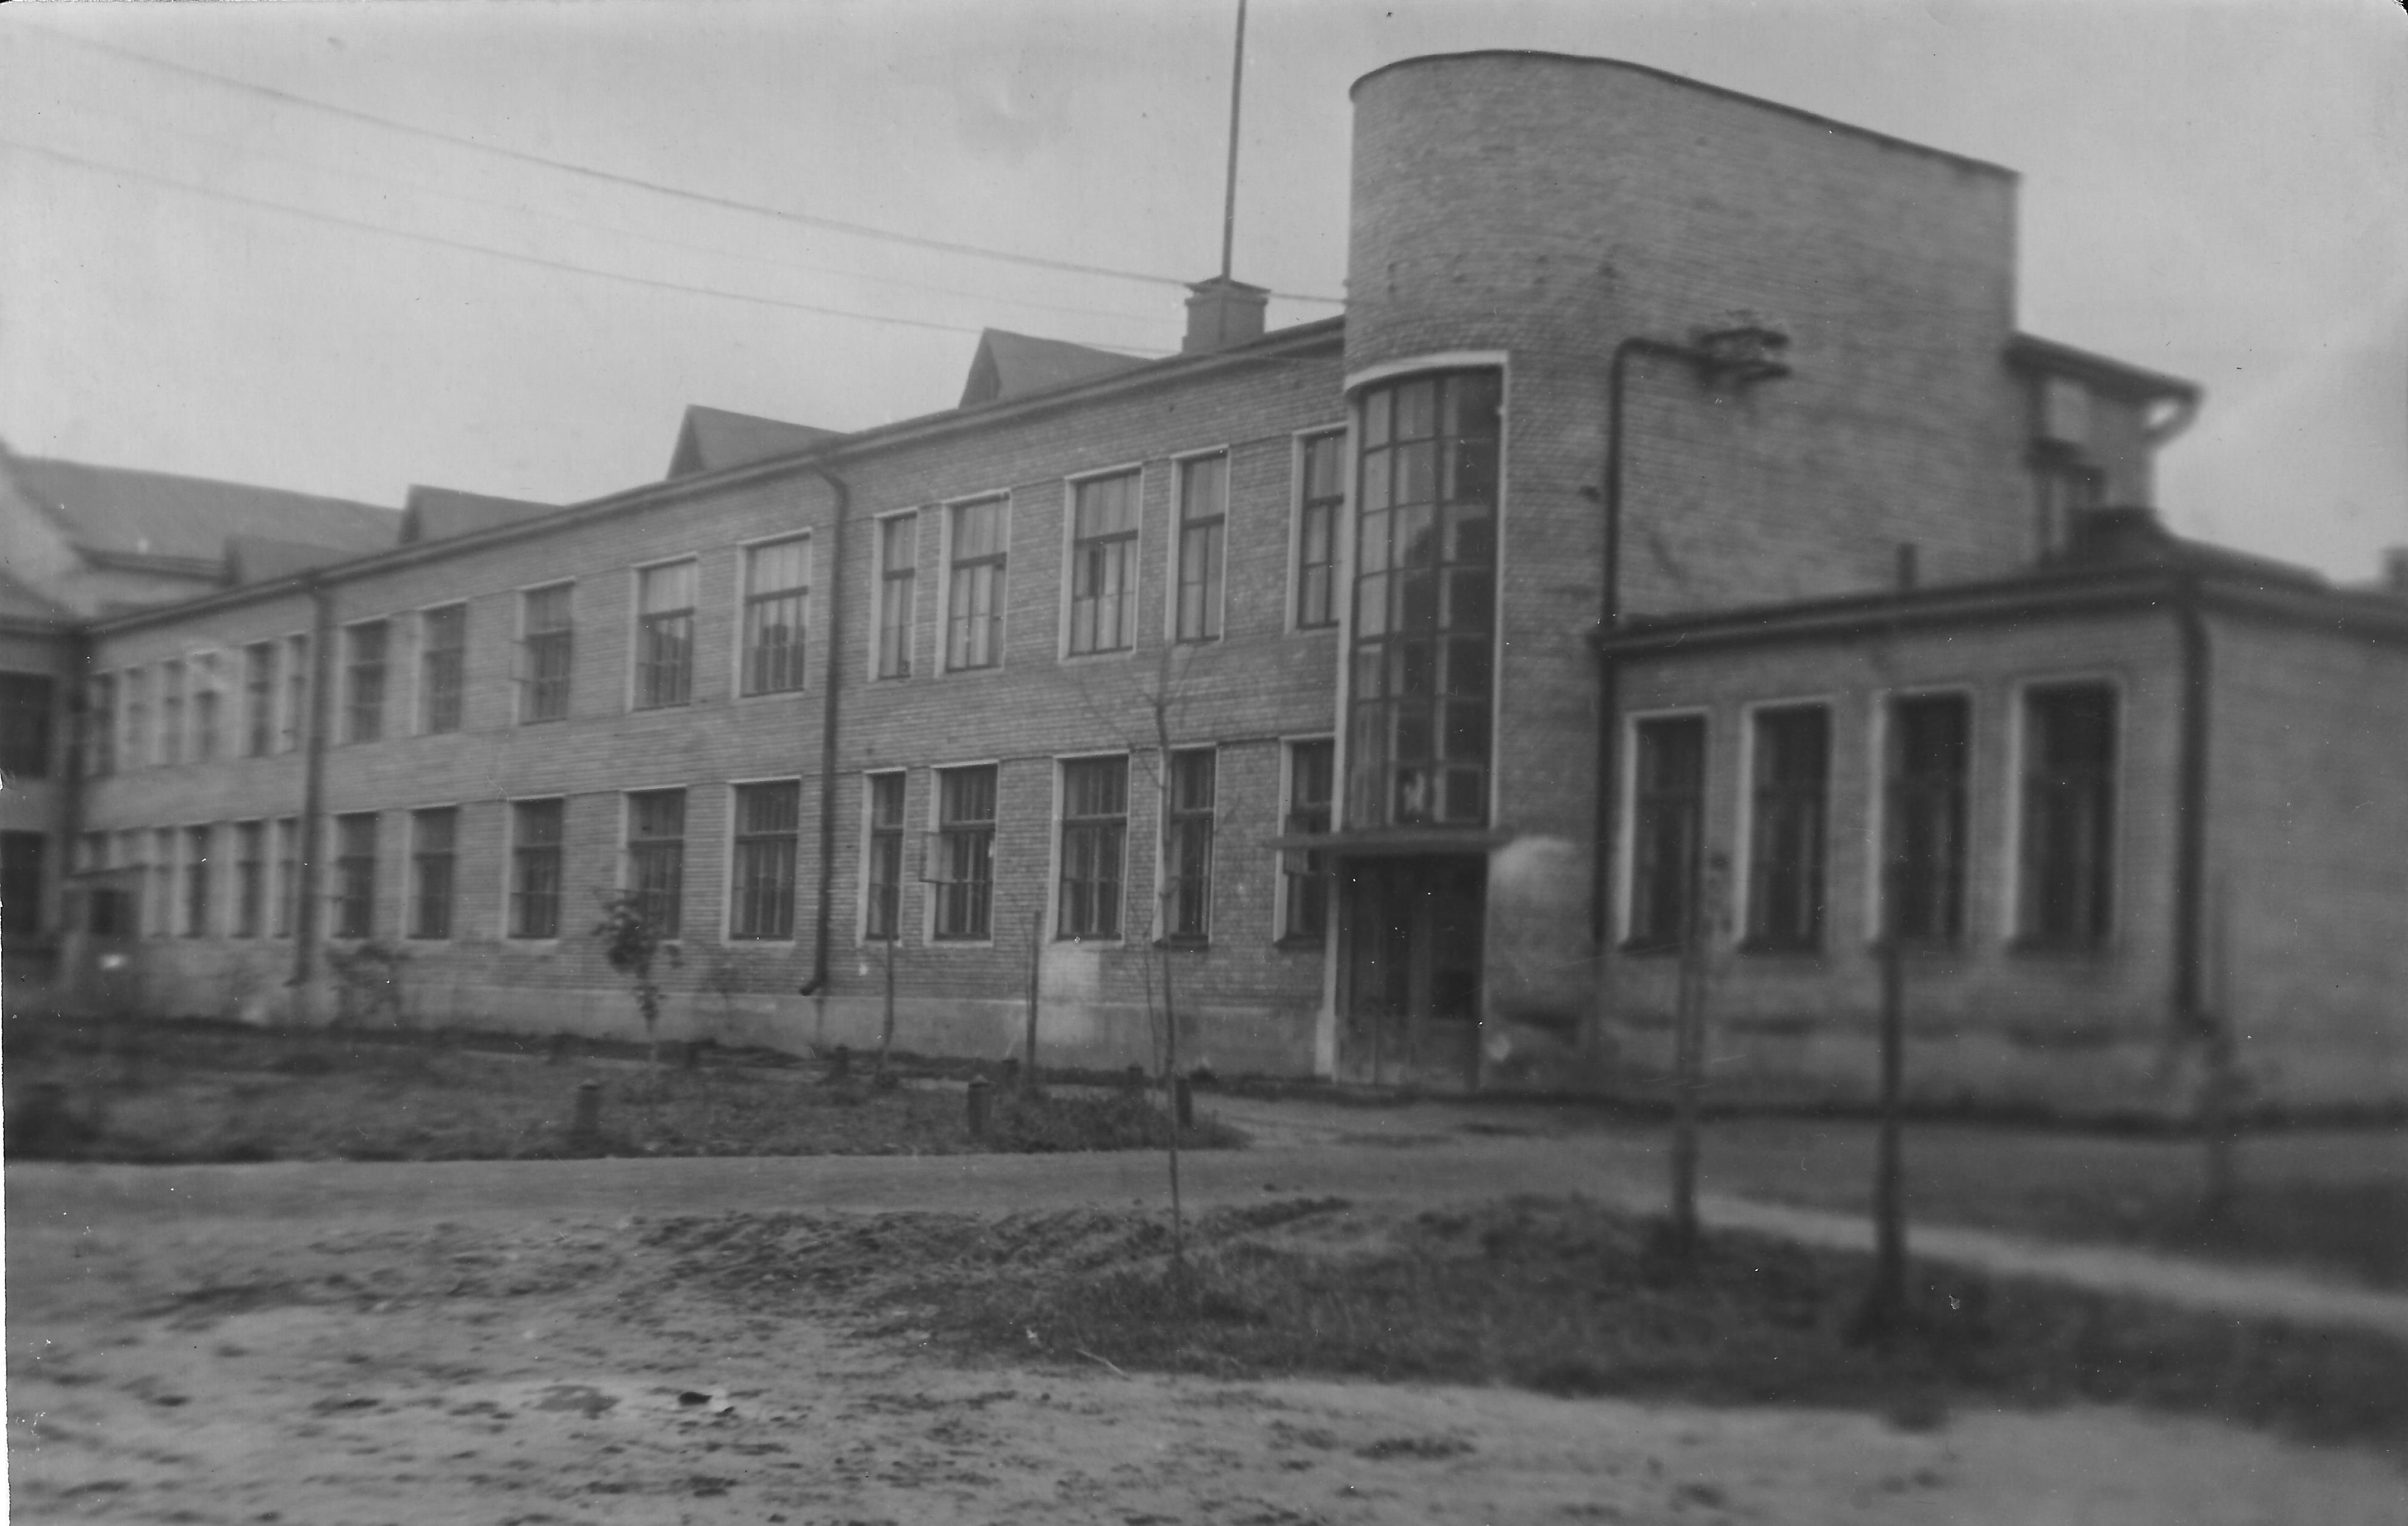   Uno degli edifici dell'Istituto del Soccorso Rosso Internazionale ad Ivanovo, URSS